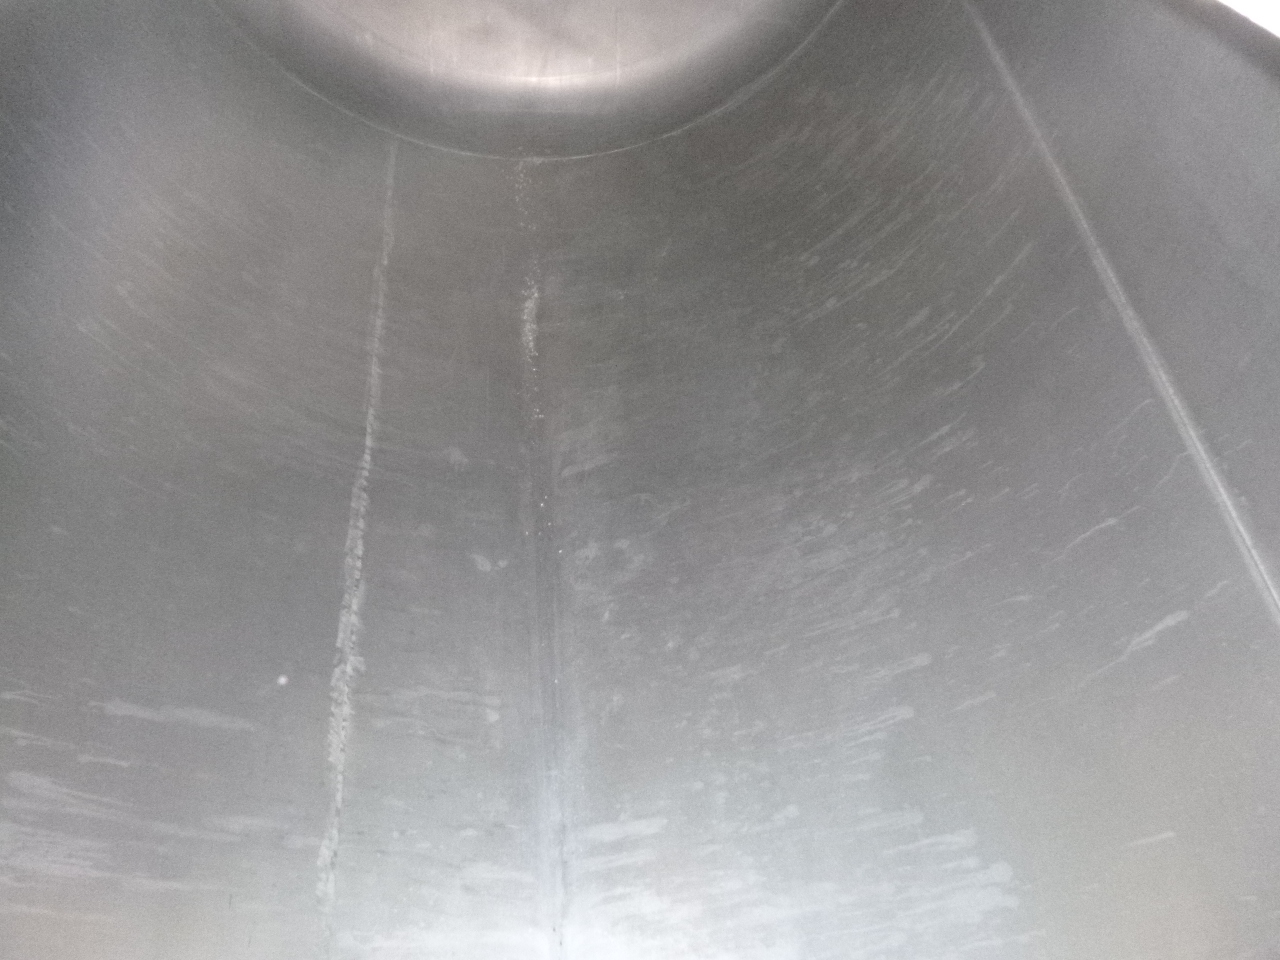 Poluprikolica cisterna za prijevoz brašna Cobo Powder tank alu 58 m3 (tipping): slika Poluprikolica cisterna za prijevoz brašna Cobo Powder tank alu 58 m3 (tipping)